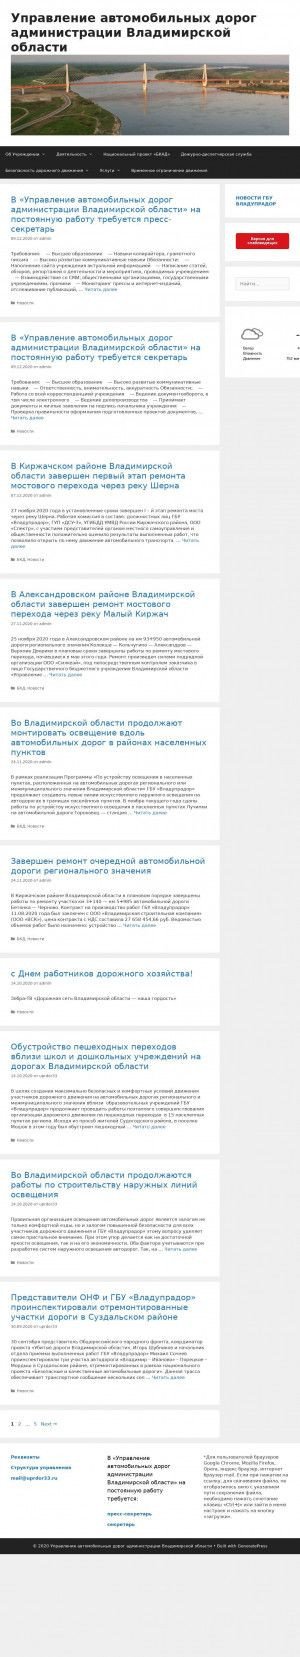 Предпросмотр для uprdor33.ru — Управление Автомобильных Дорог Администрации Владимирской области